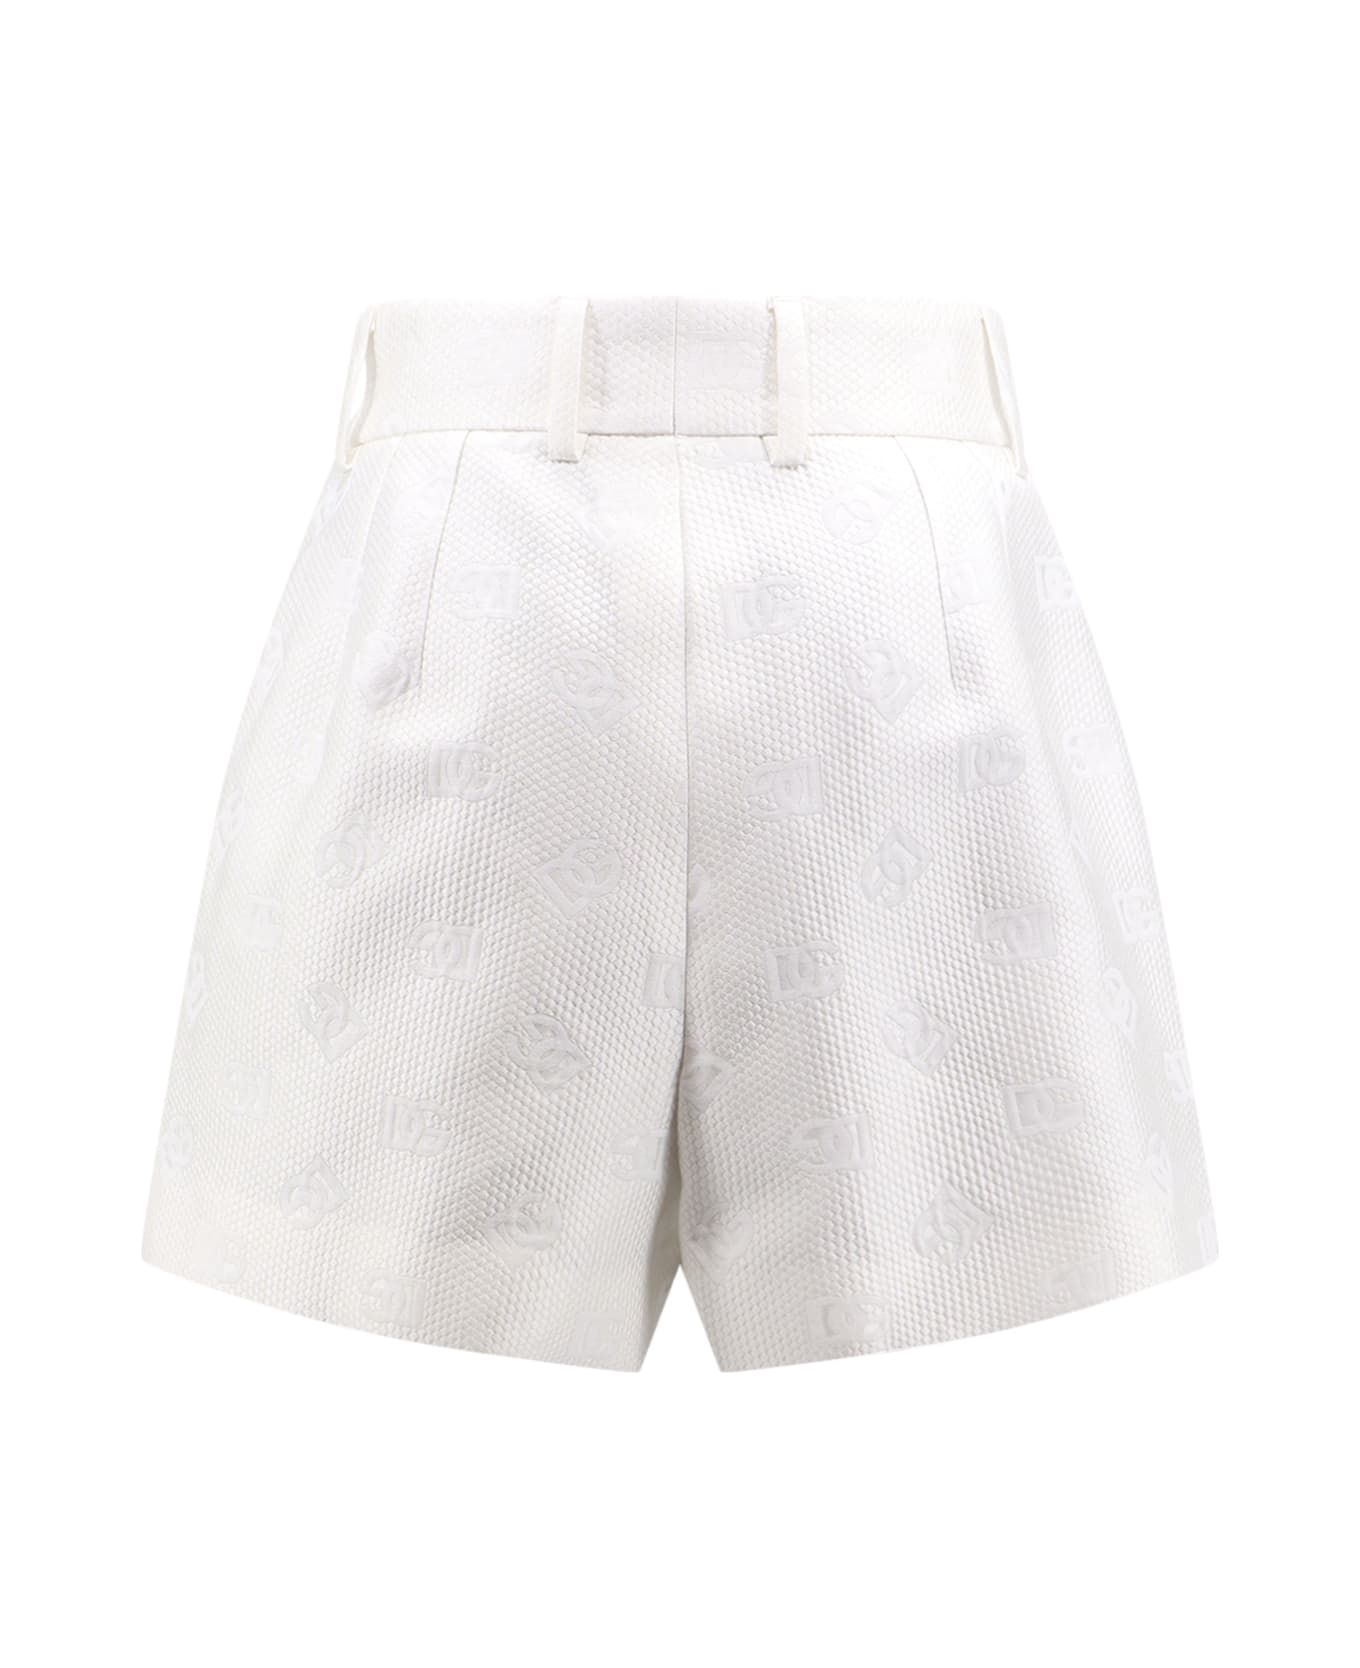 Dolce & Gabbana Shorts - White ショートパンツ